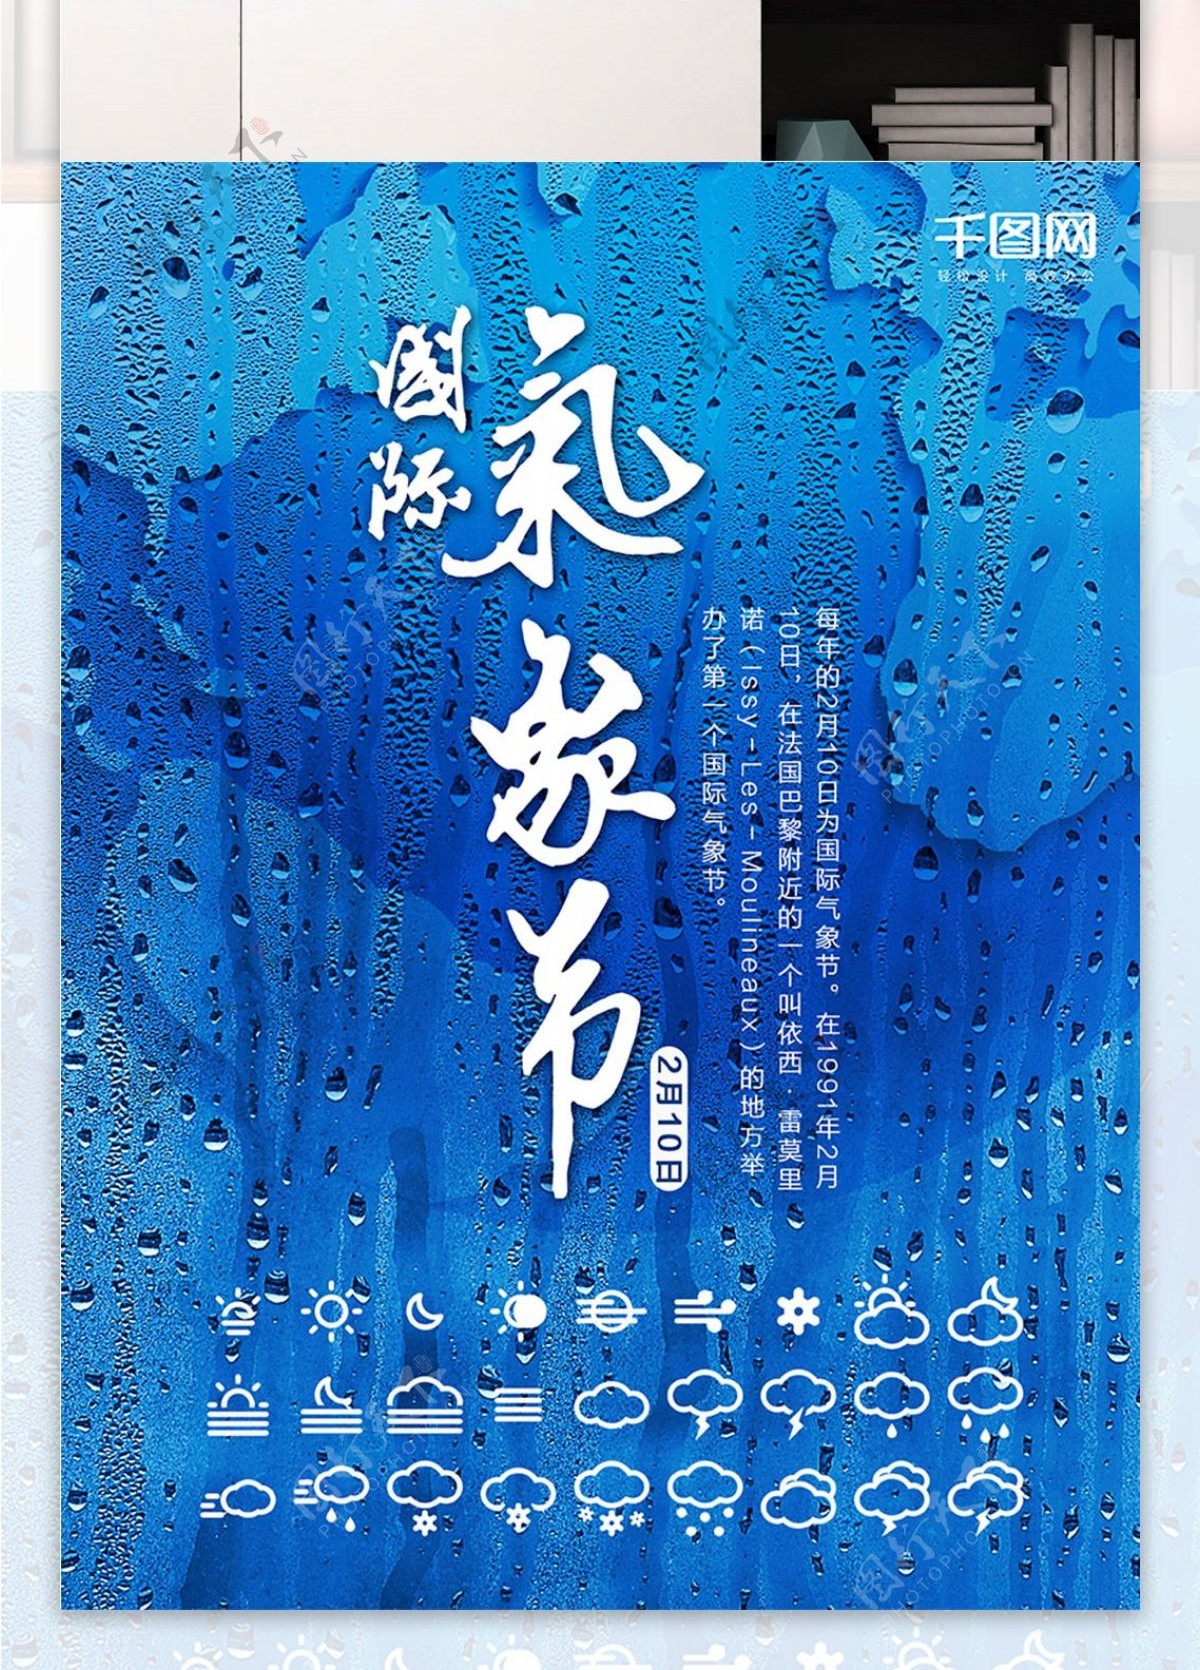 雨天地球背景国际气象节海报设计